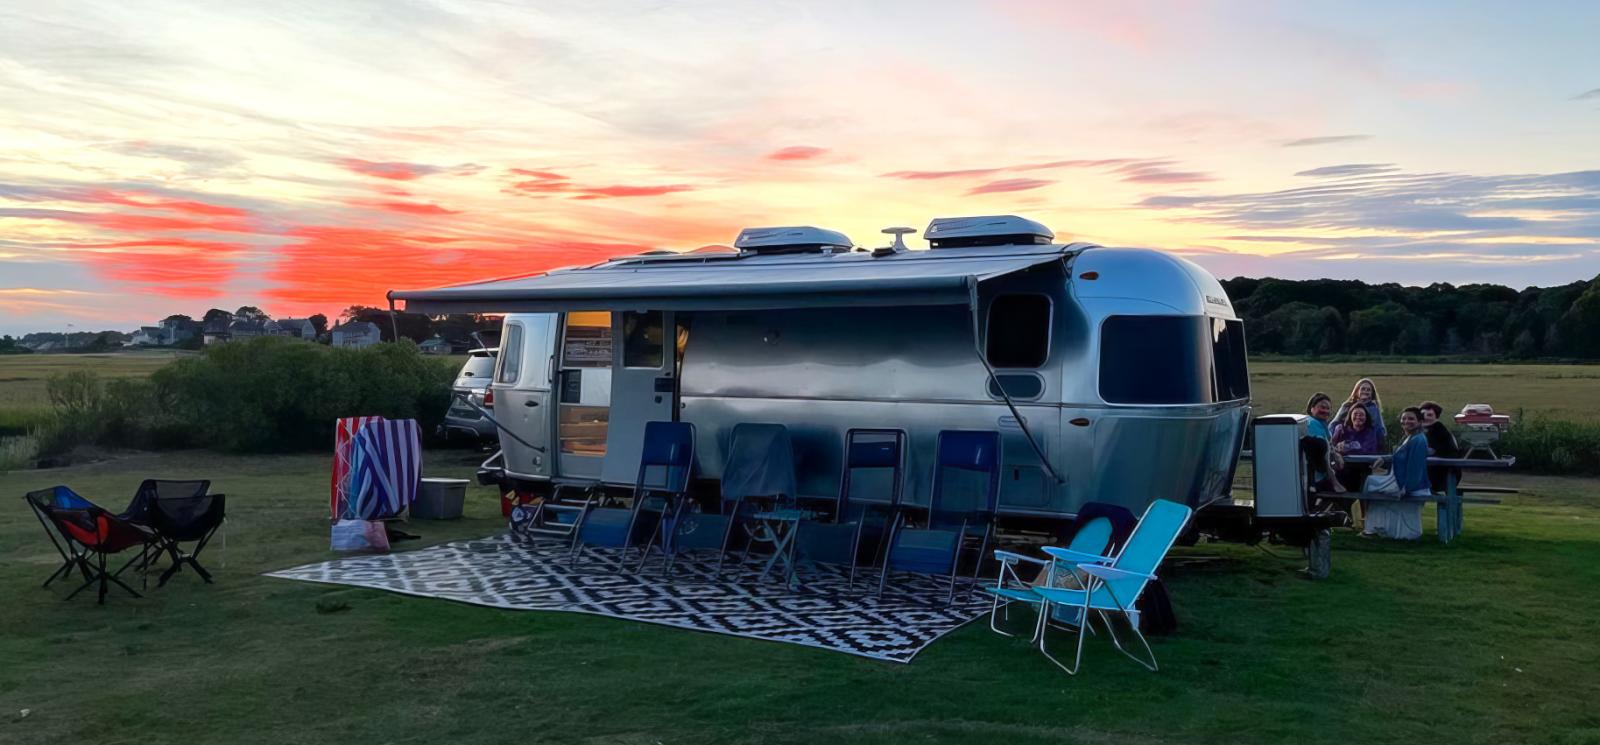 Family camping at Hammonassett State Park (Instagram@adventuresofroytheairstream)